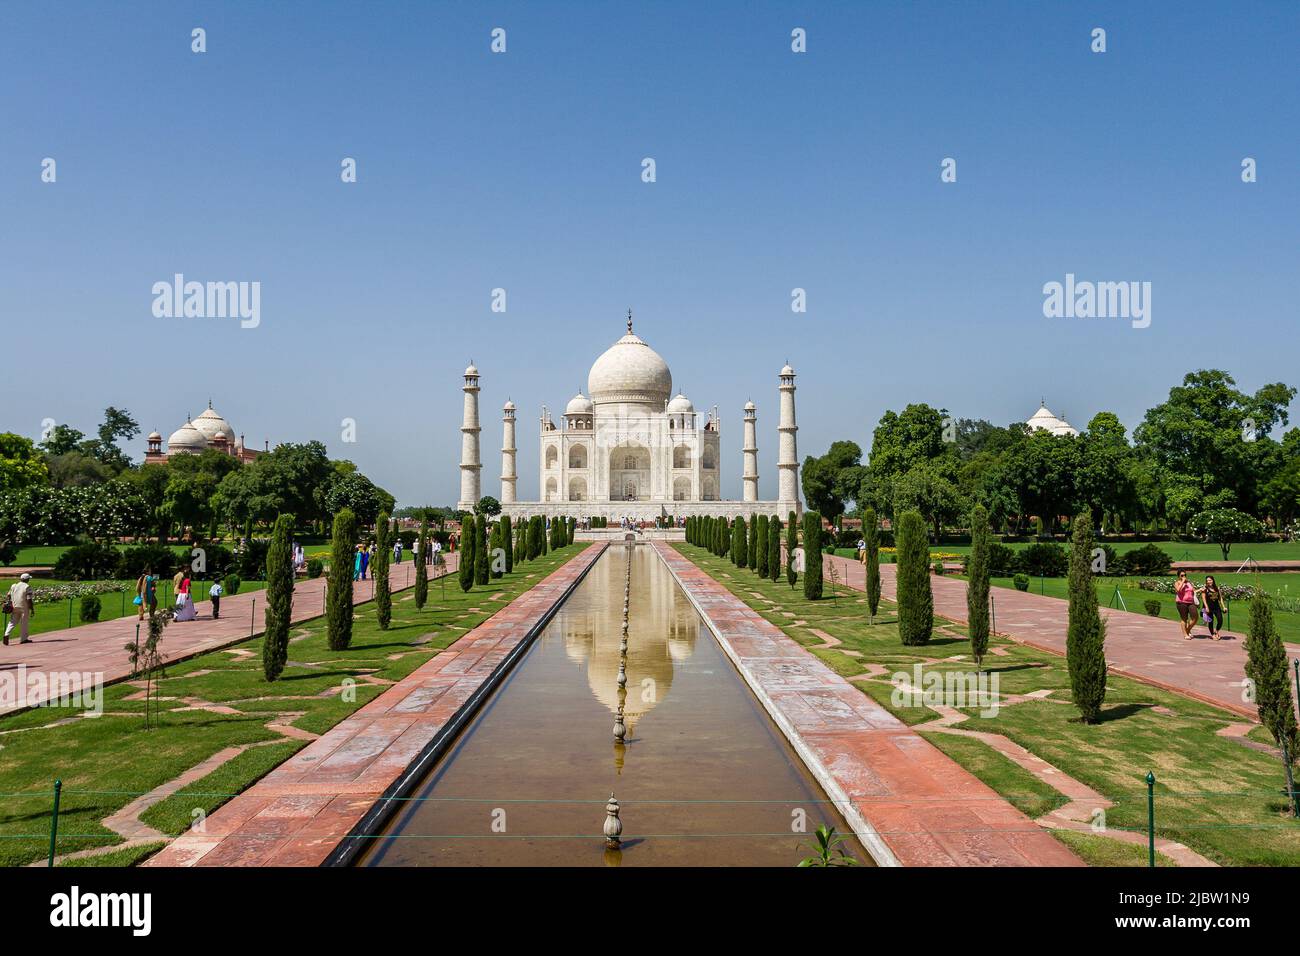 Le Taj Mahal Front View, Agra, Uttar Pradesh, Inde. Patrimoine mondial de l'UNESCO. Sept merveilles du monde Taj Mahal, une merveille intemporelle. Banque D'Images